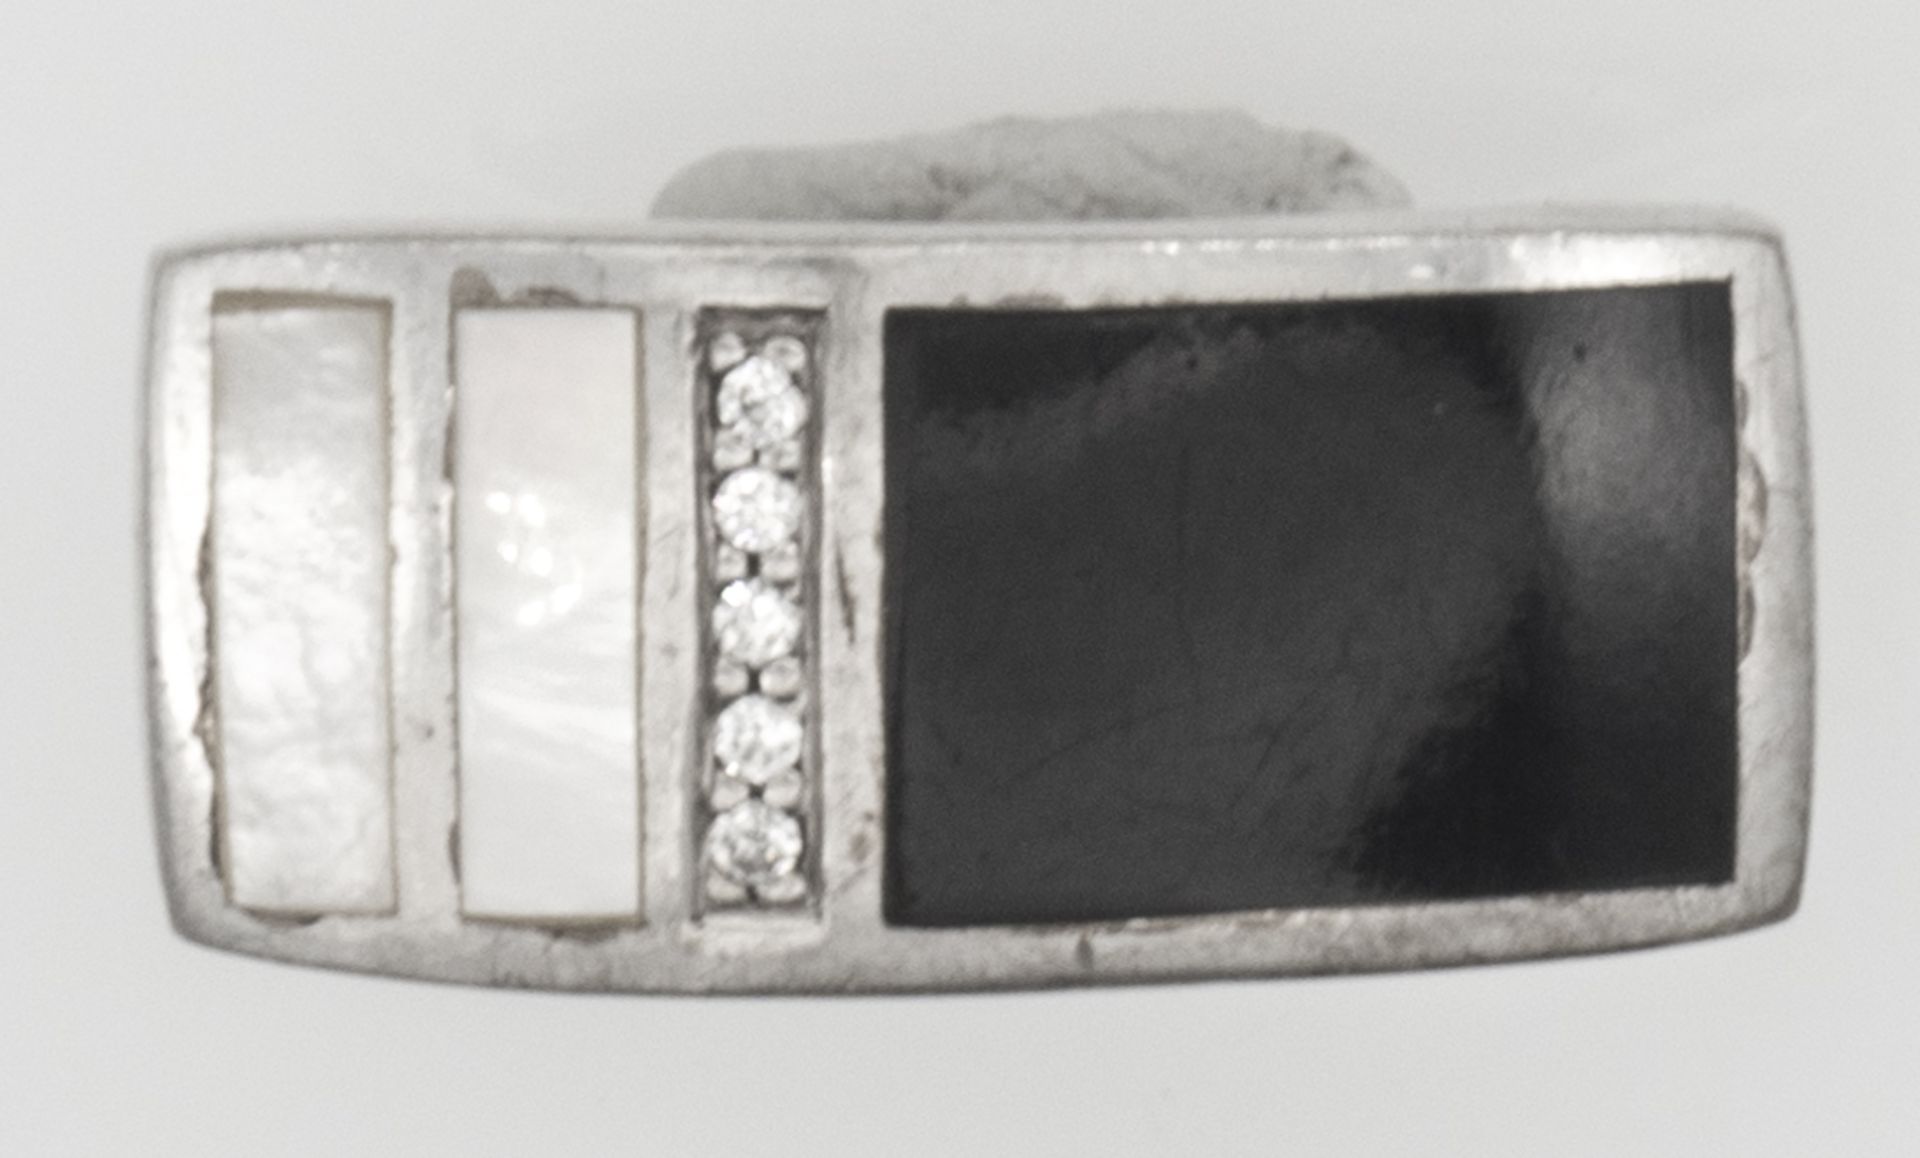 Herrn - Ring, Silber 925, mit Onyx, Perlmutt und Markasiten besetzt. Ringgröße: ca. 58.